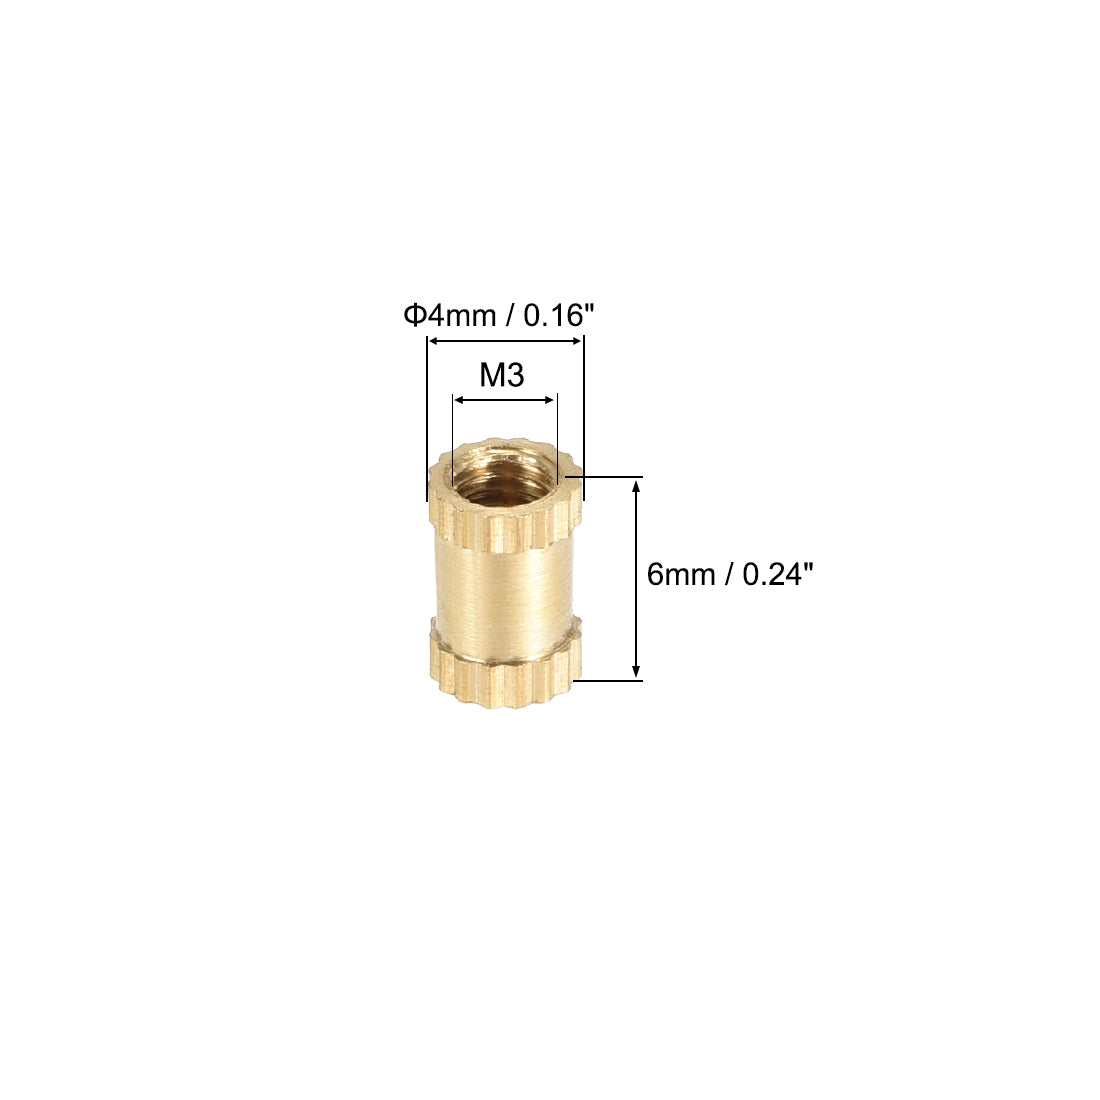 uxcell Uxcell Knurled Insert Nuts, M3 x 6mm(L) x 4mm(OD) Female Thread Brass Embedment Assortment Kit, 50 Pcs